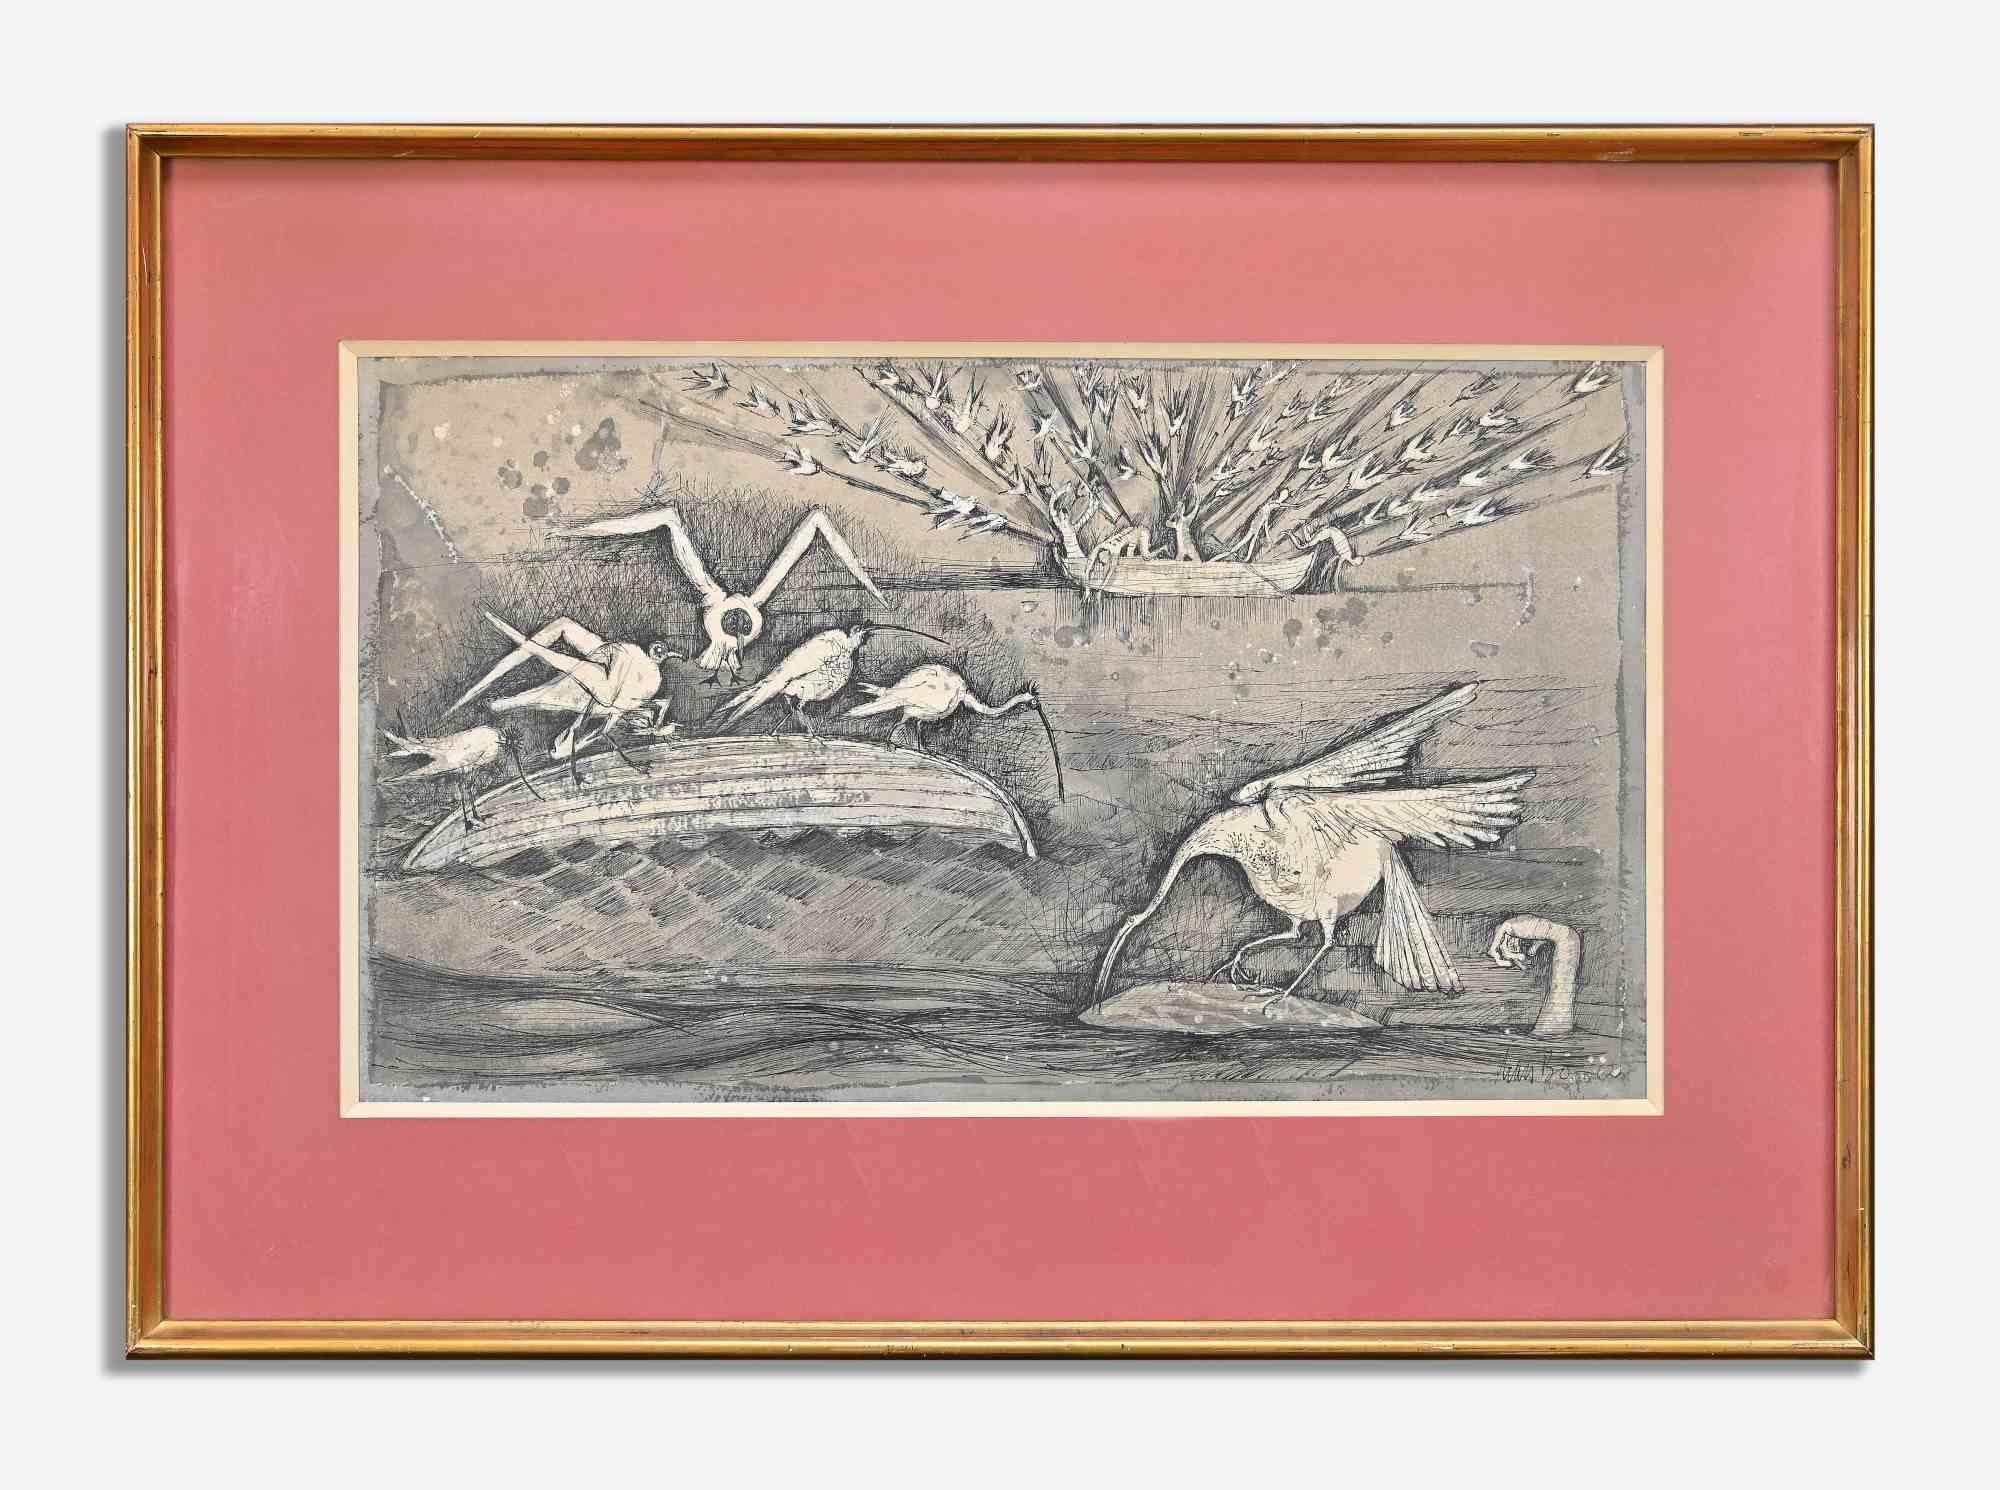 Die Jagd ist ein Original-Kunstwerk von Lars Bo aus dem Jahr 1962.

Aquarelliertes Porzellan auf Papier.

Handsigniert und datiert am unteren rechten Rand.

Handgeschriebene Notizen auf der Rückseite

Inklusive Rahmen: 48,5 x 1 x 68 cm

Lars Bo (29.